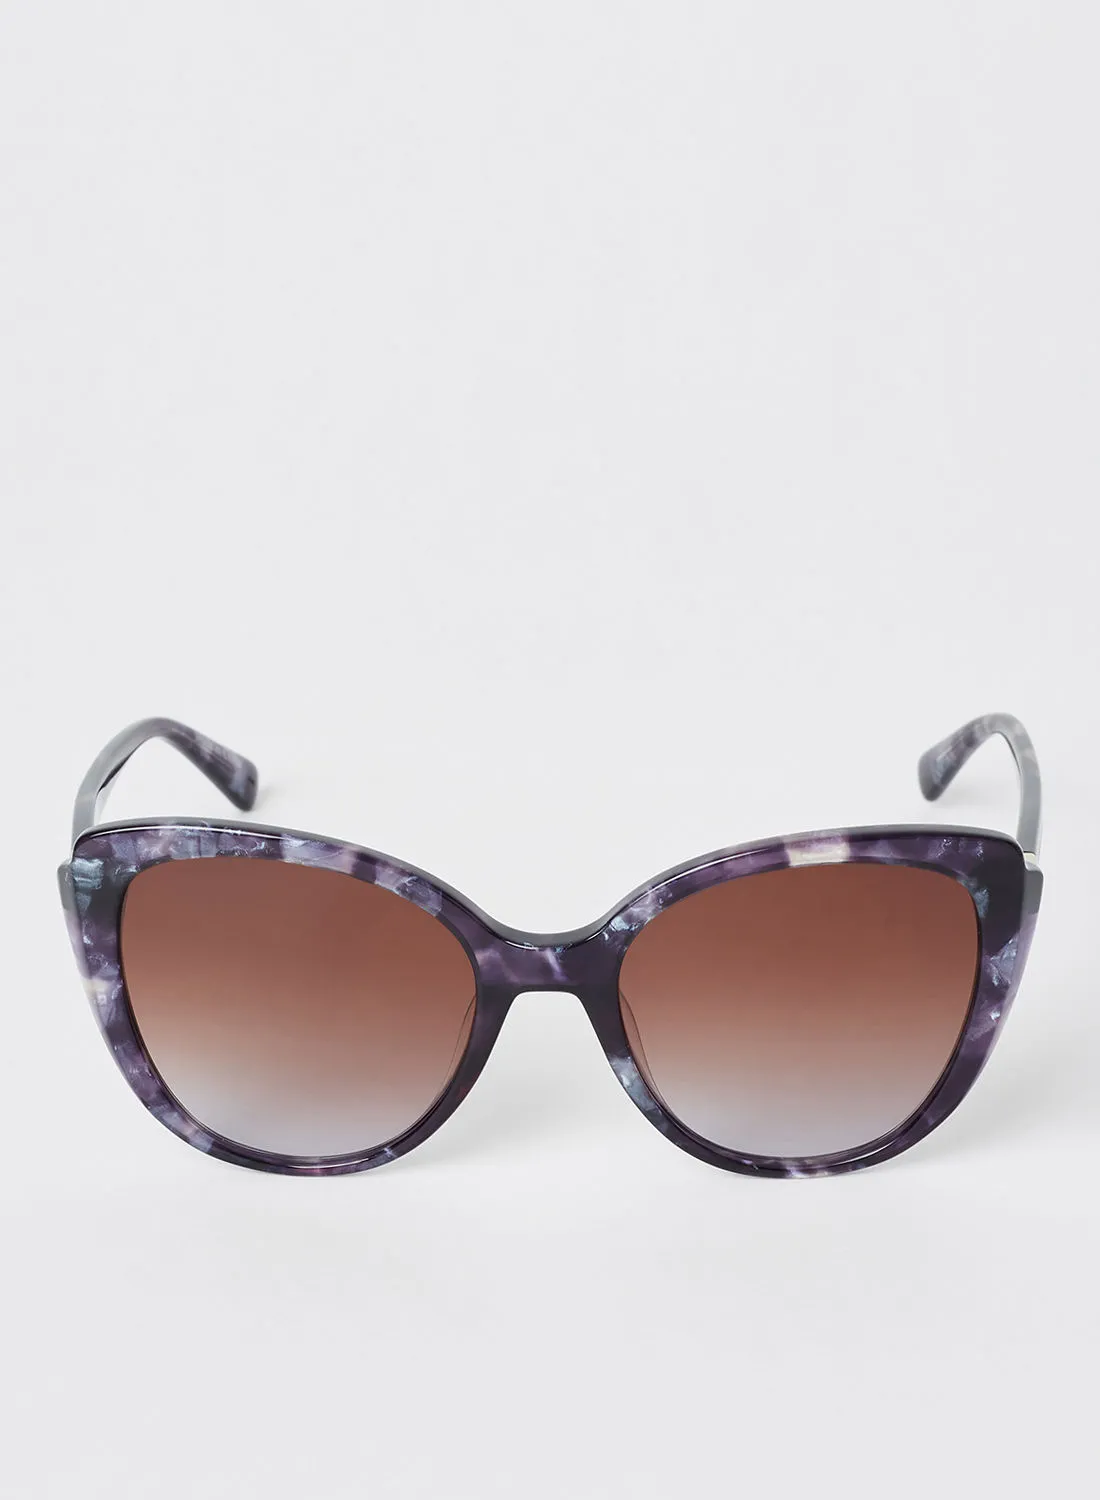 Longchamp Women's Full Rim Acetate Butterfly Sunglasses - Lens Size: 54 mm